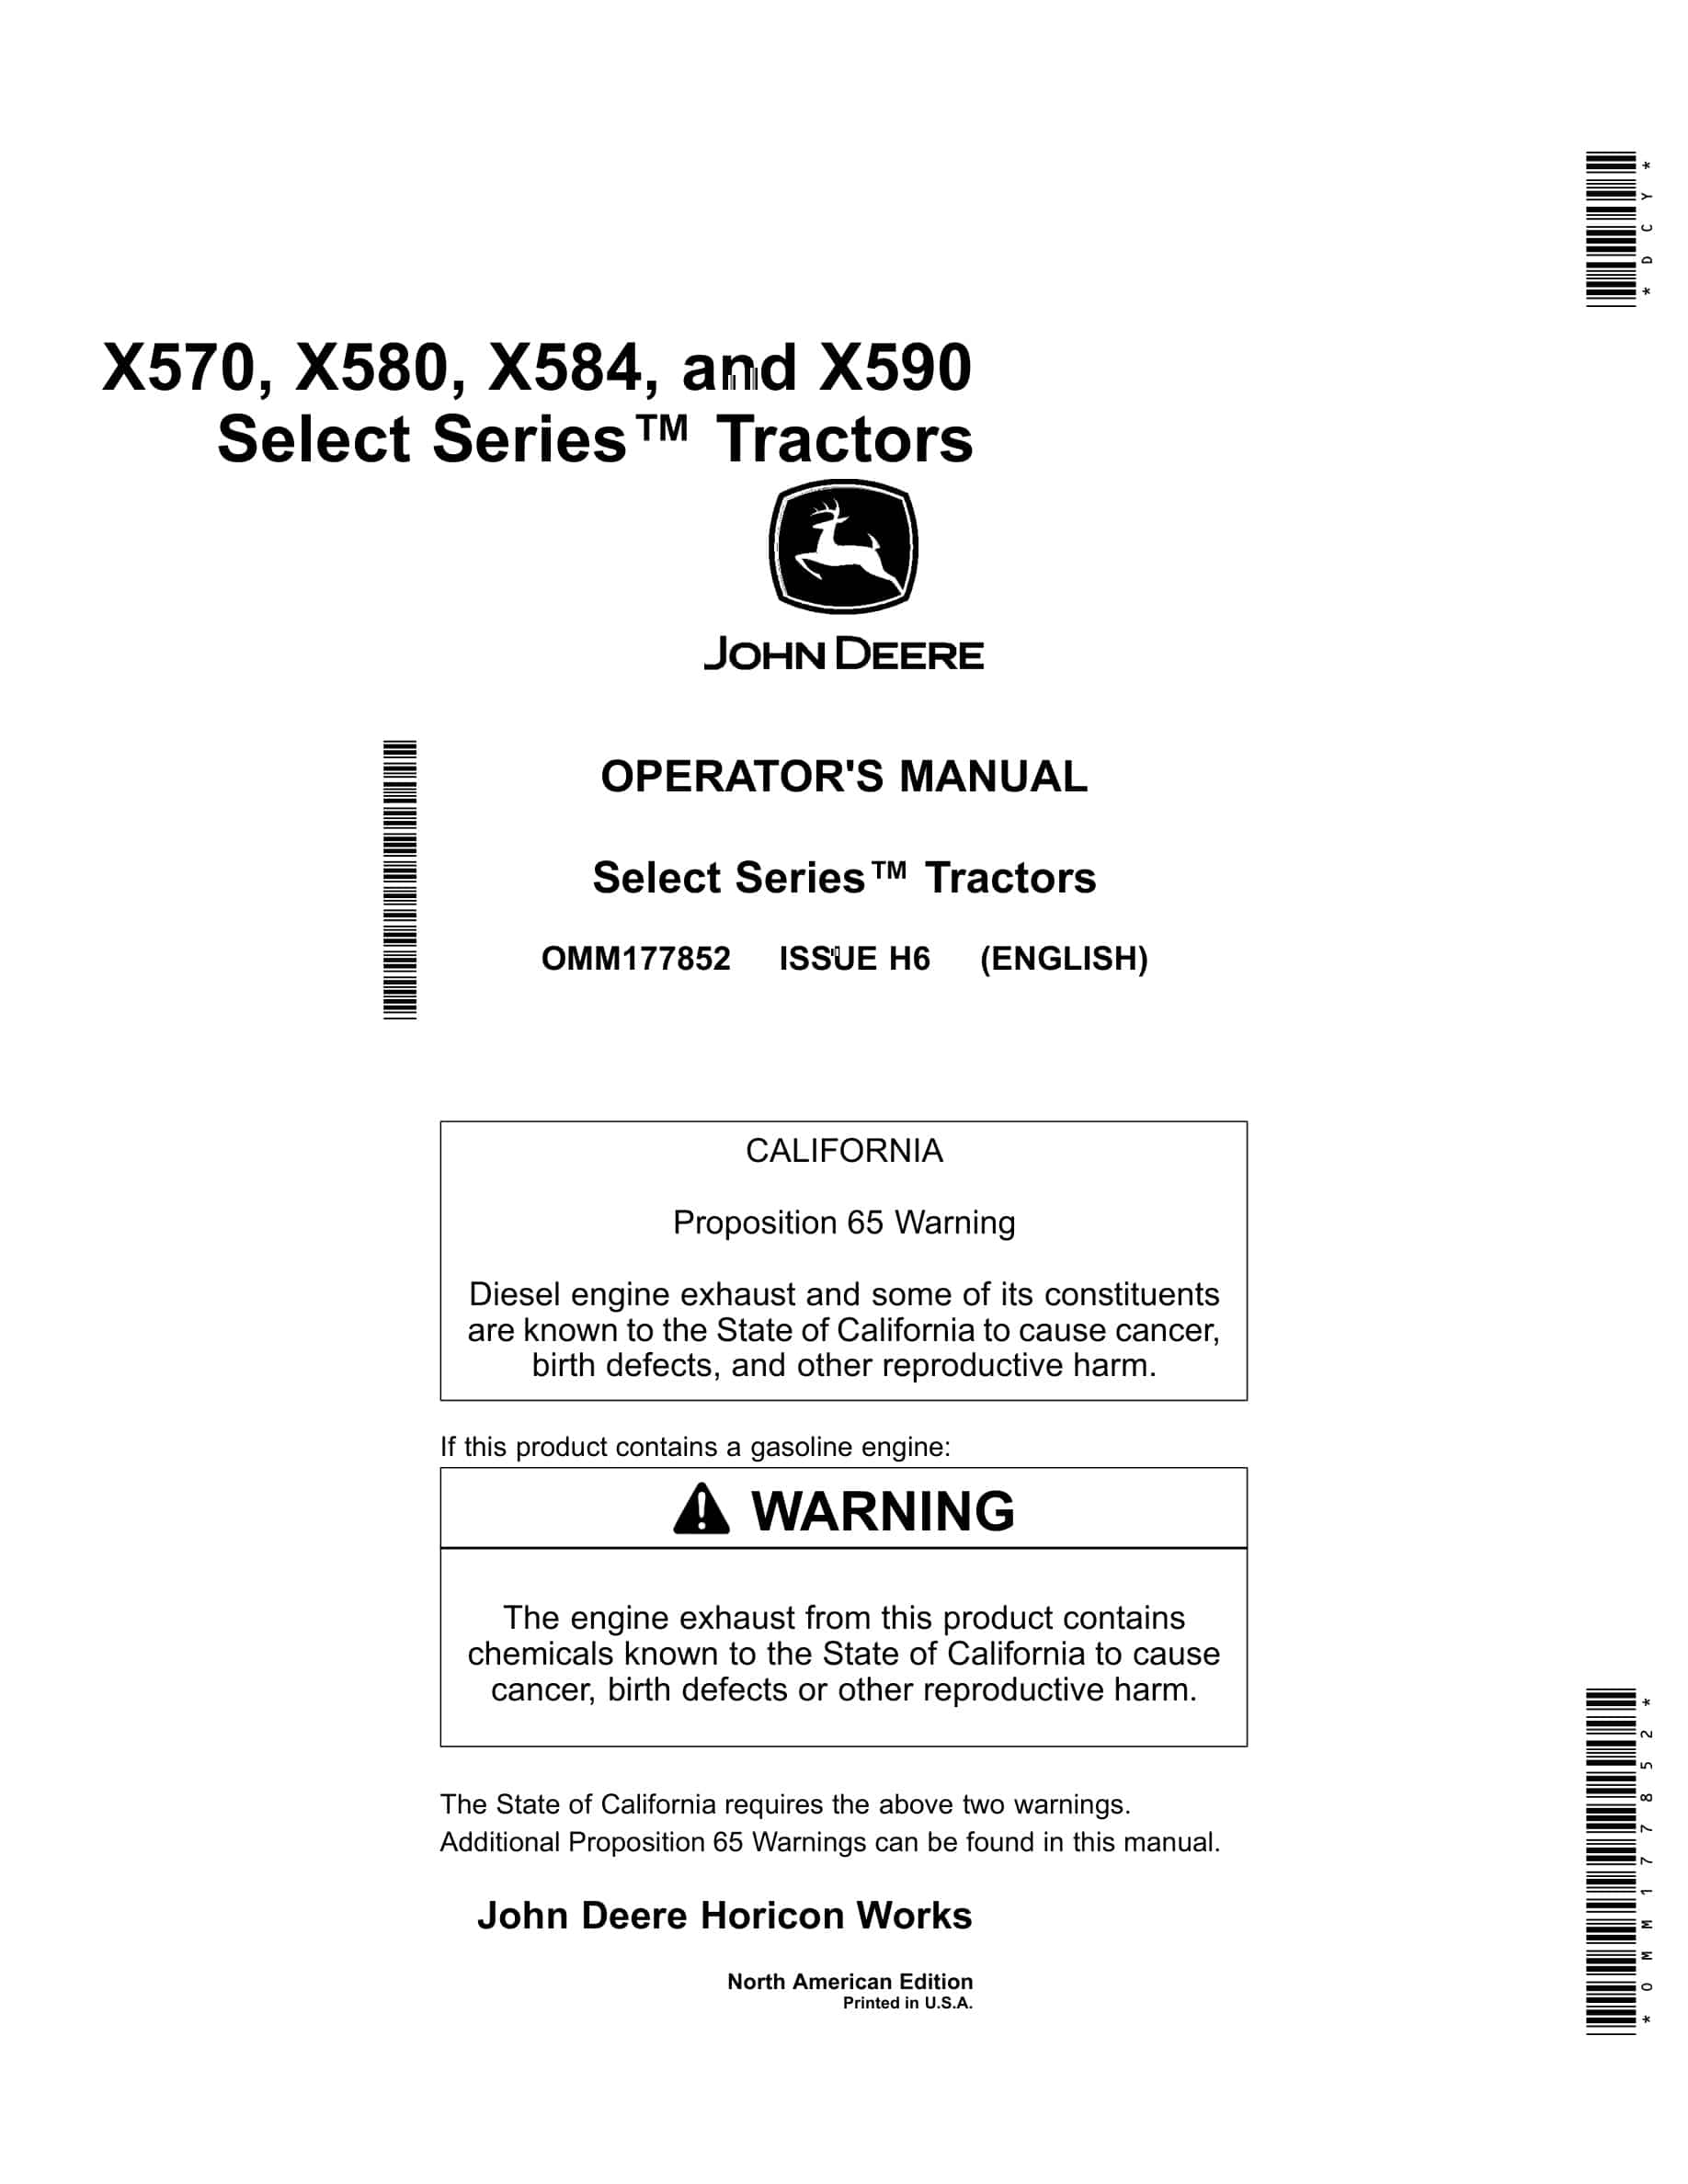 John Deere X570, X580, X584, and X590 Tractor Operator Manual OMM177852-1